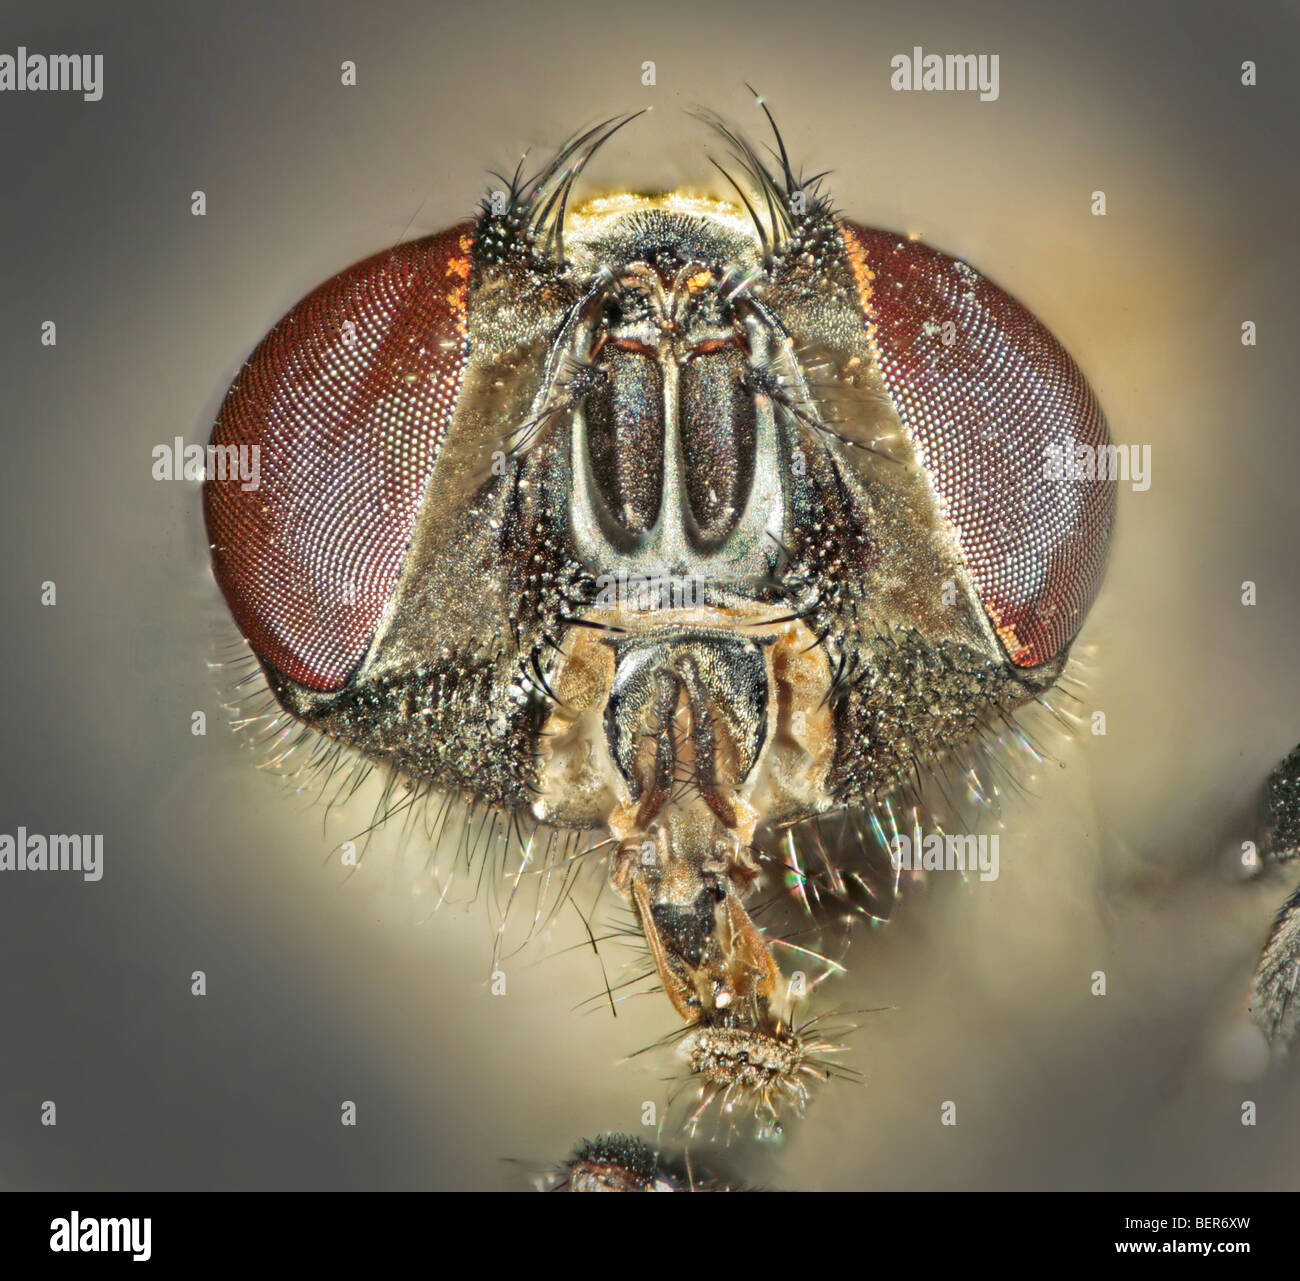 Housefly (anche mosca di casa, casa-fly o housefly comune), Musca domestica, la testa sulla faccia verticale Foto Stock